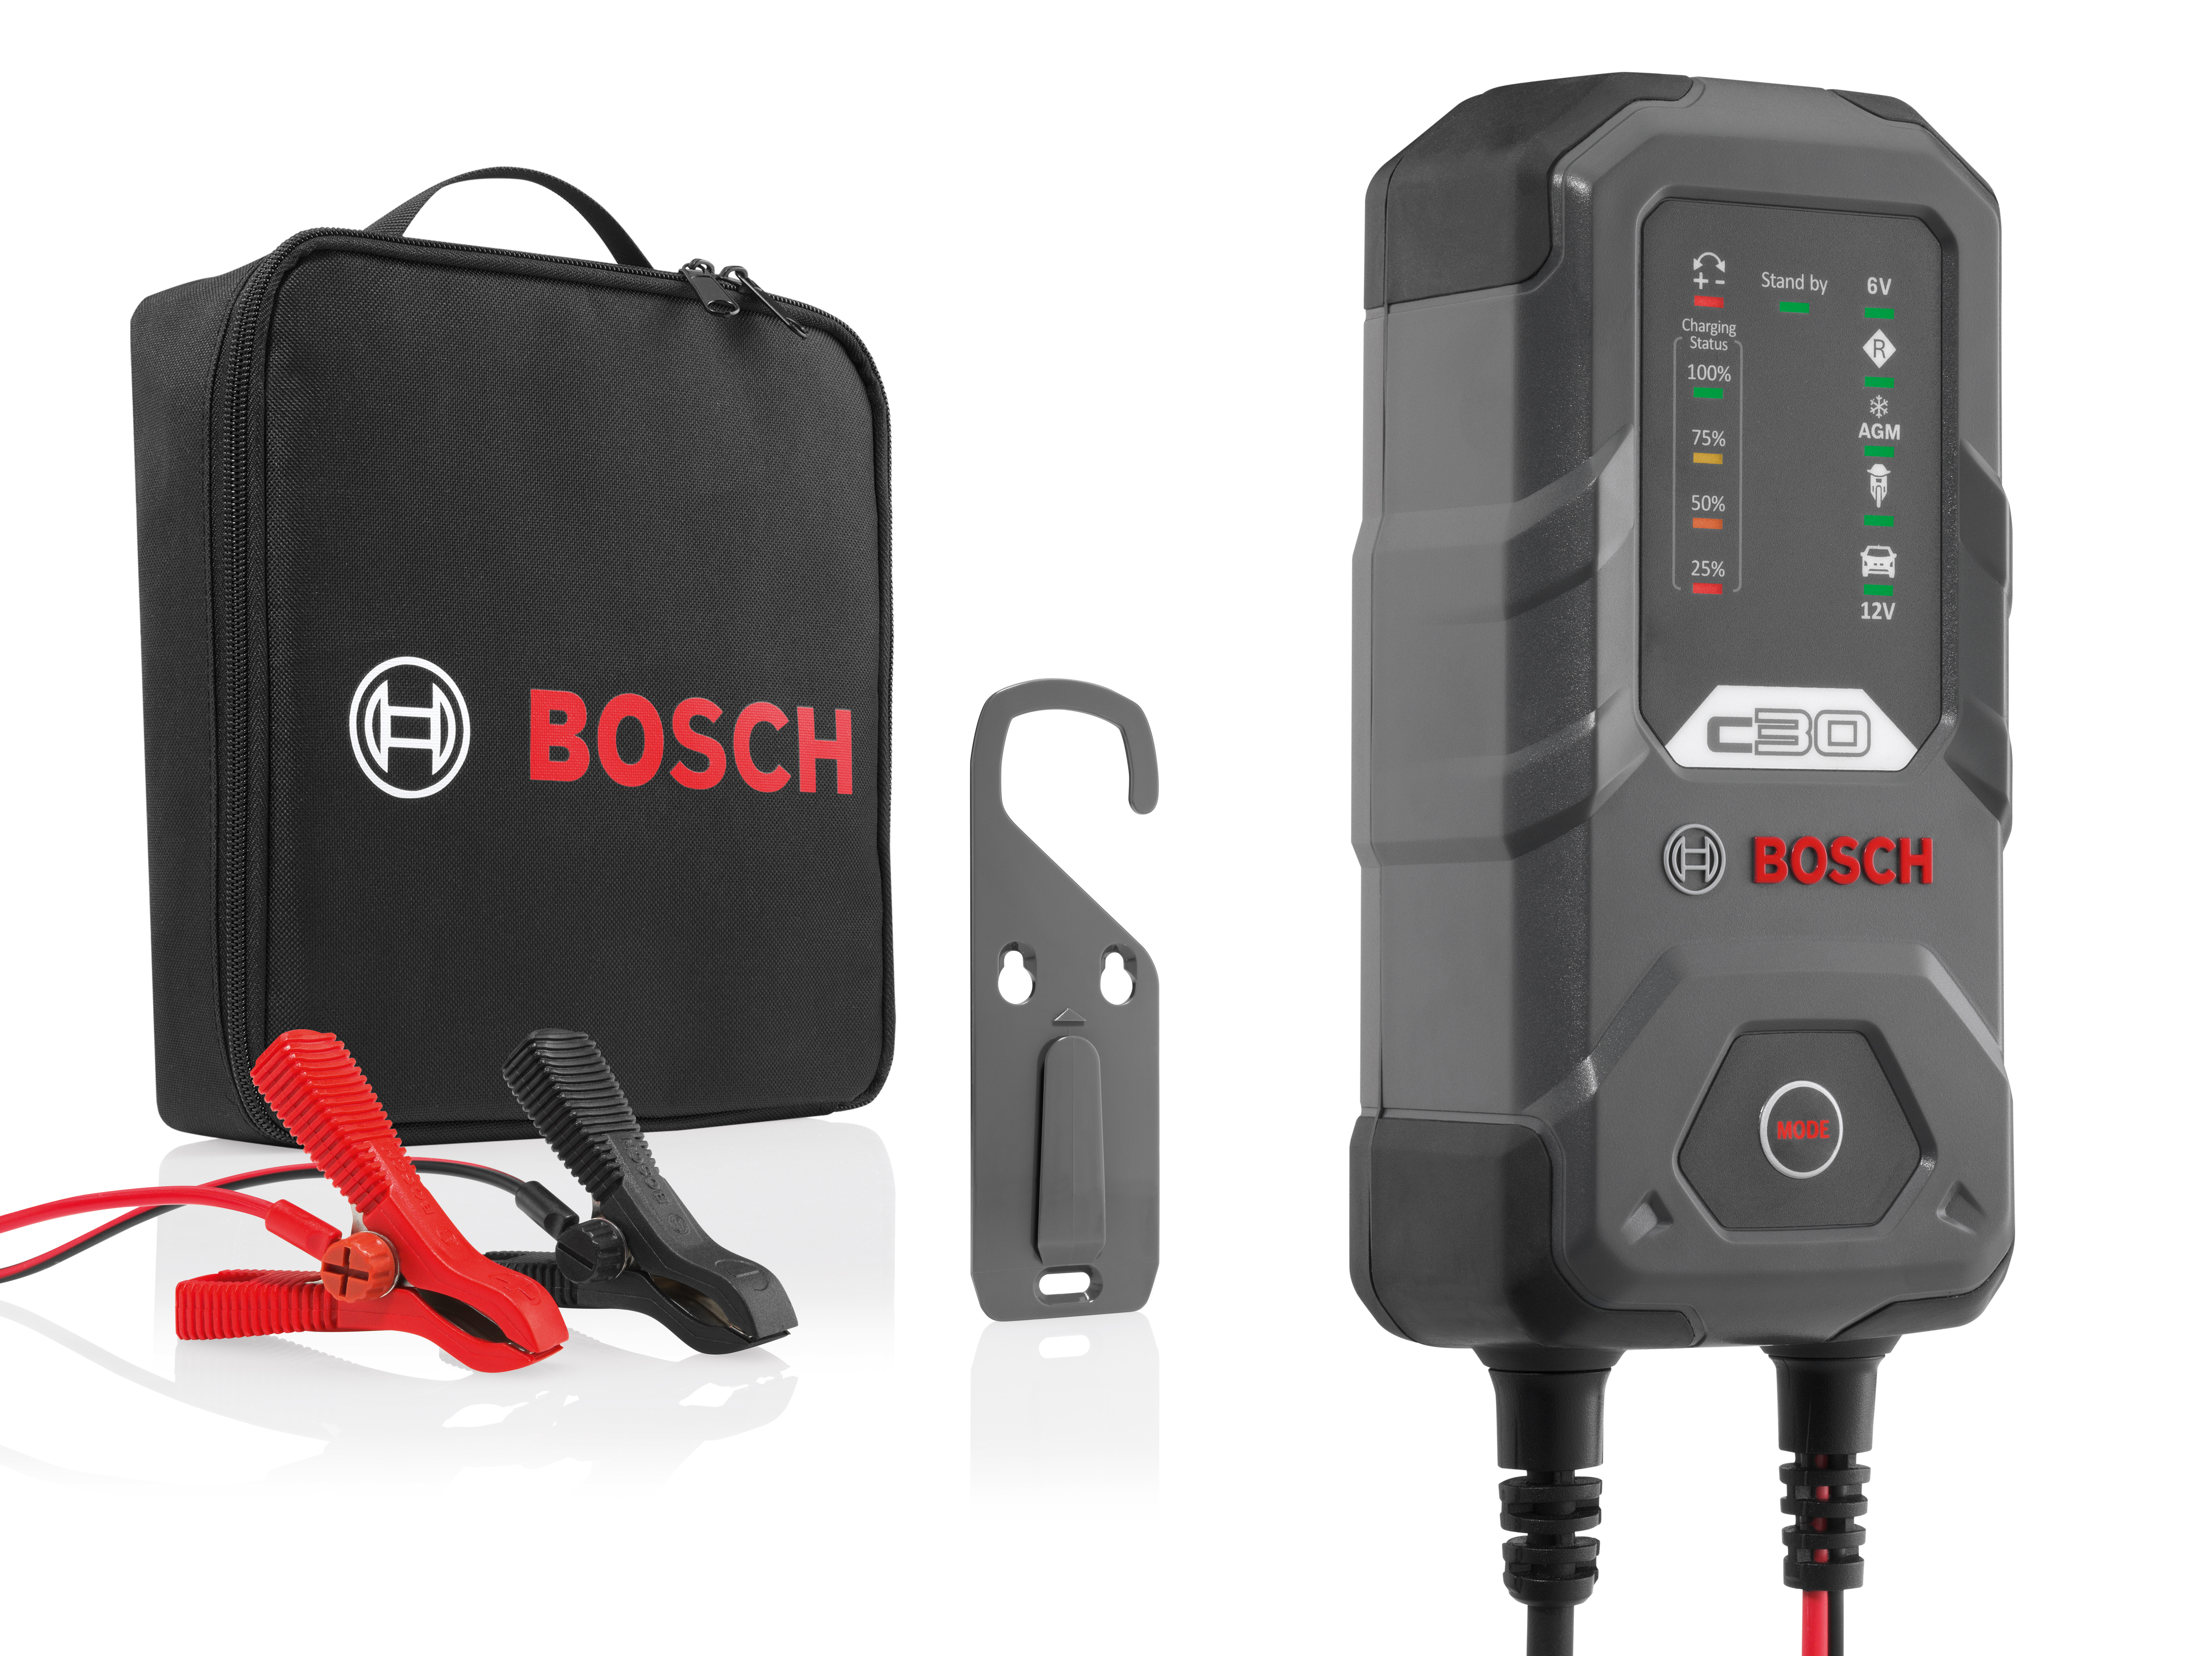 Bosch Ladegerät Classic Plus 230V mit Netzkabel online kaufen bei